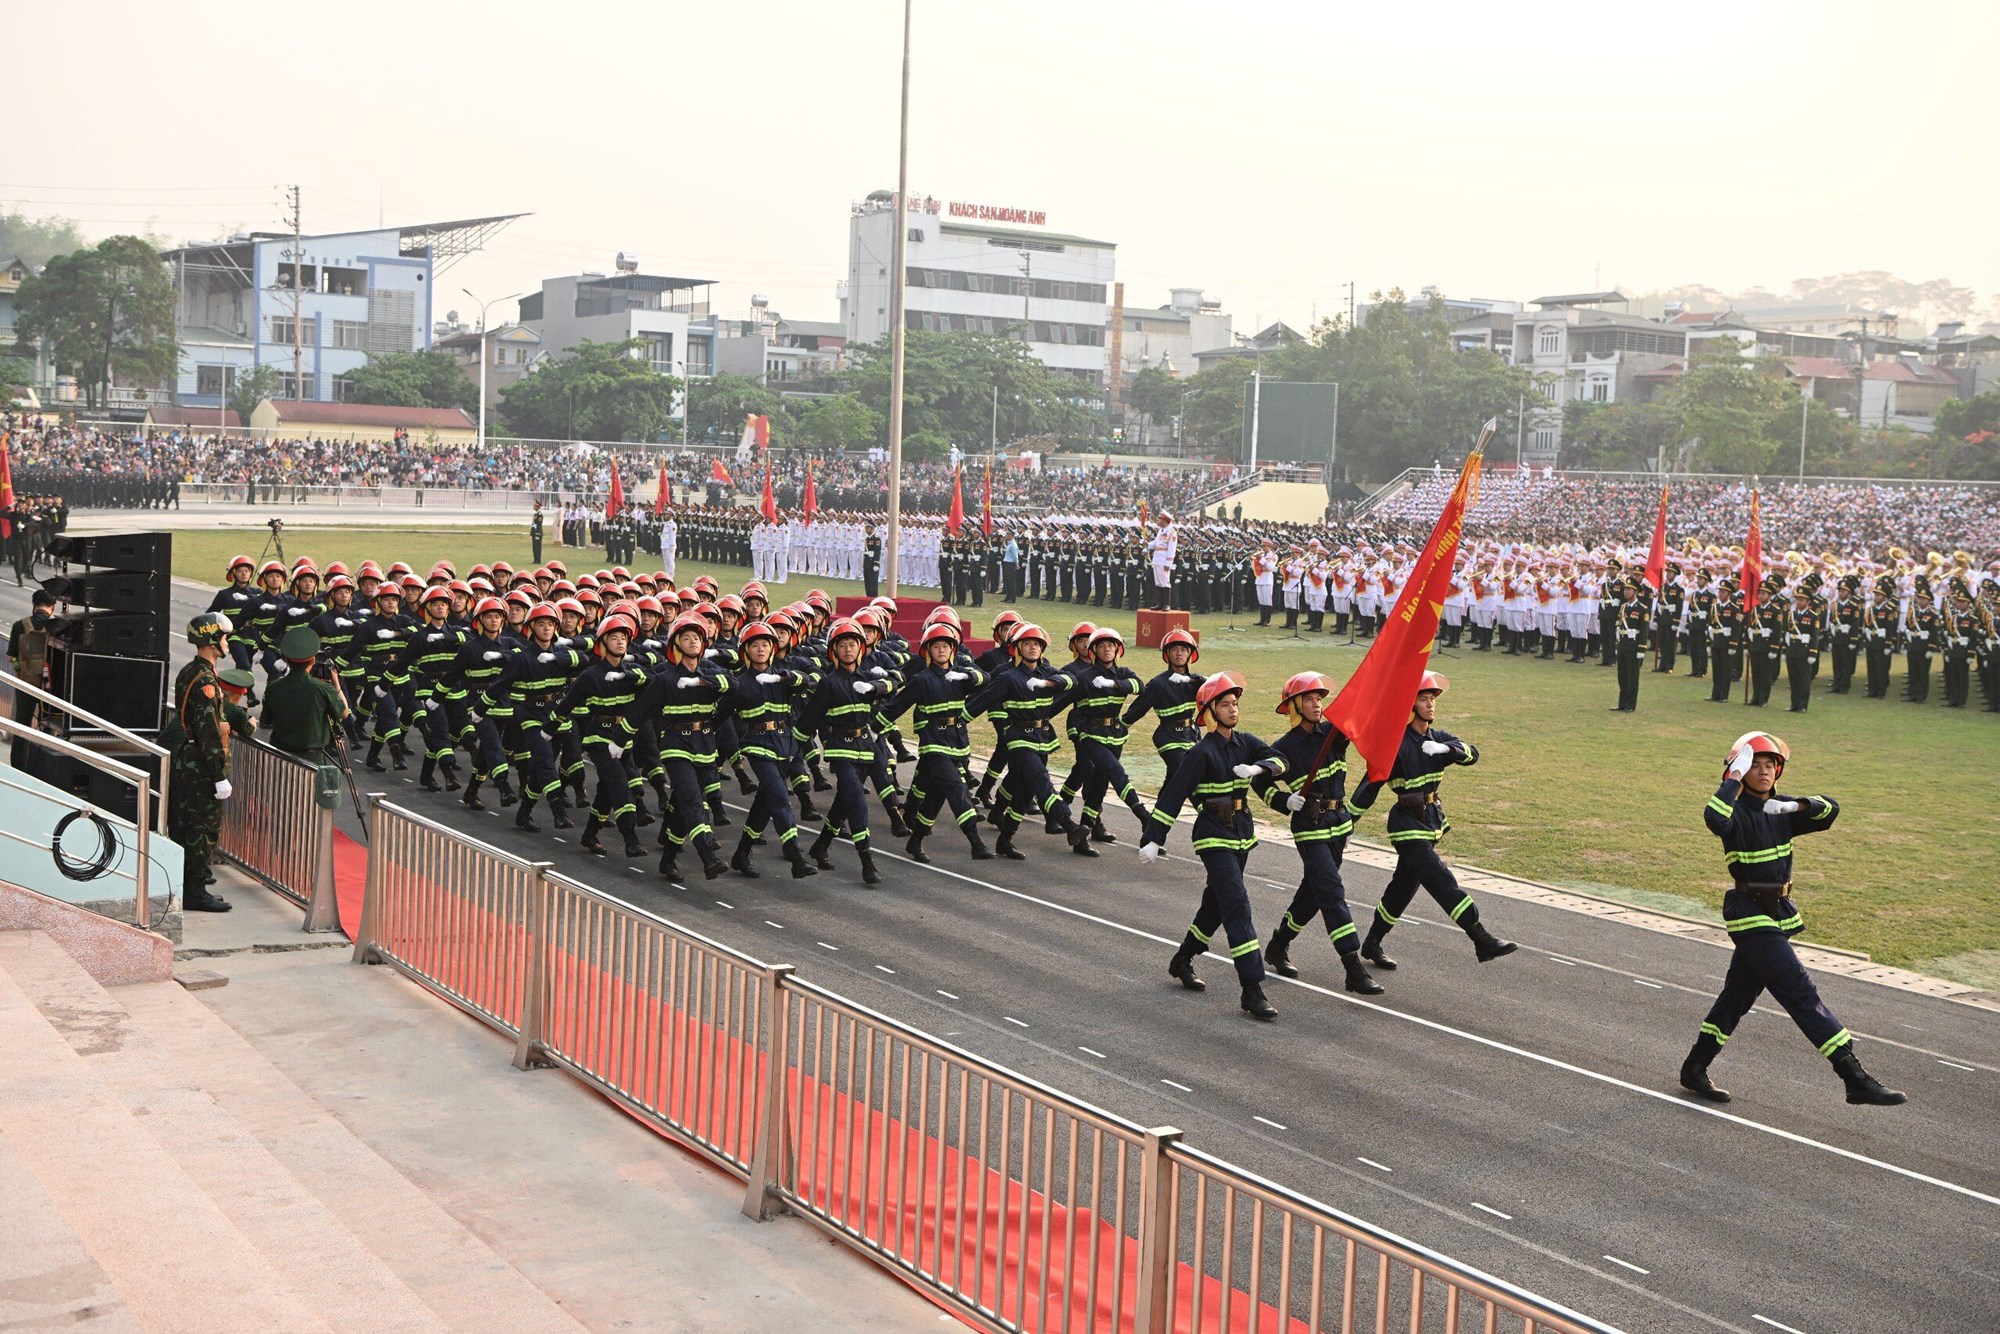 Hợp luyện các lực lượng diễu binh, diễu hành kỷ niệm 70 năm Chiến thắng Điện Biên Phủ - ảnh 13